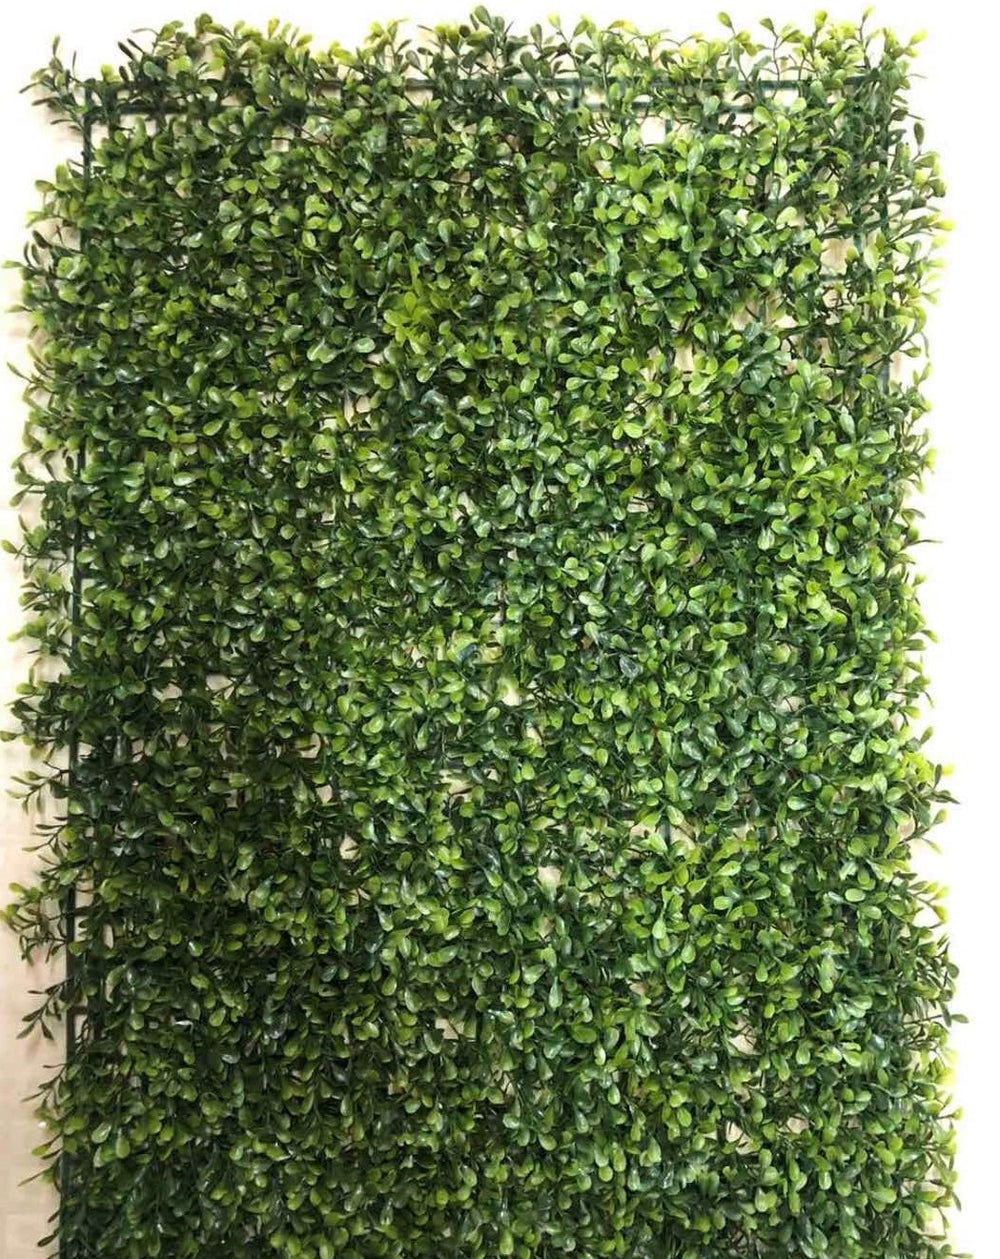 Grass Mat (Minimum of 6 Pieces)